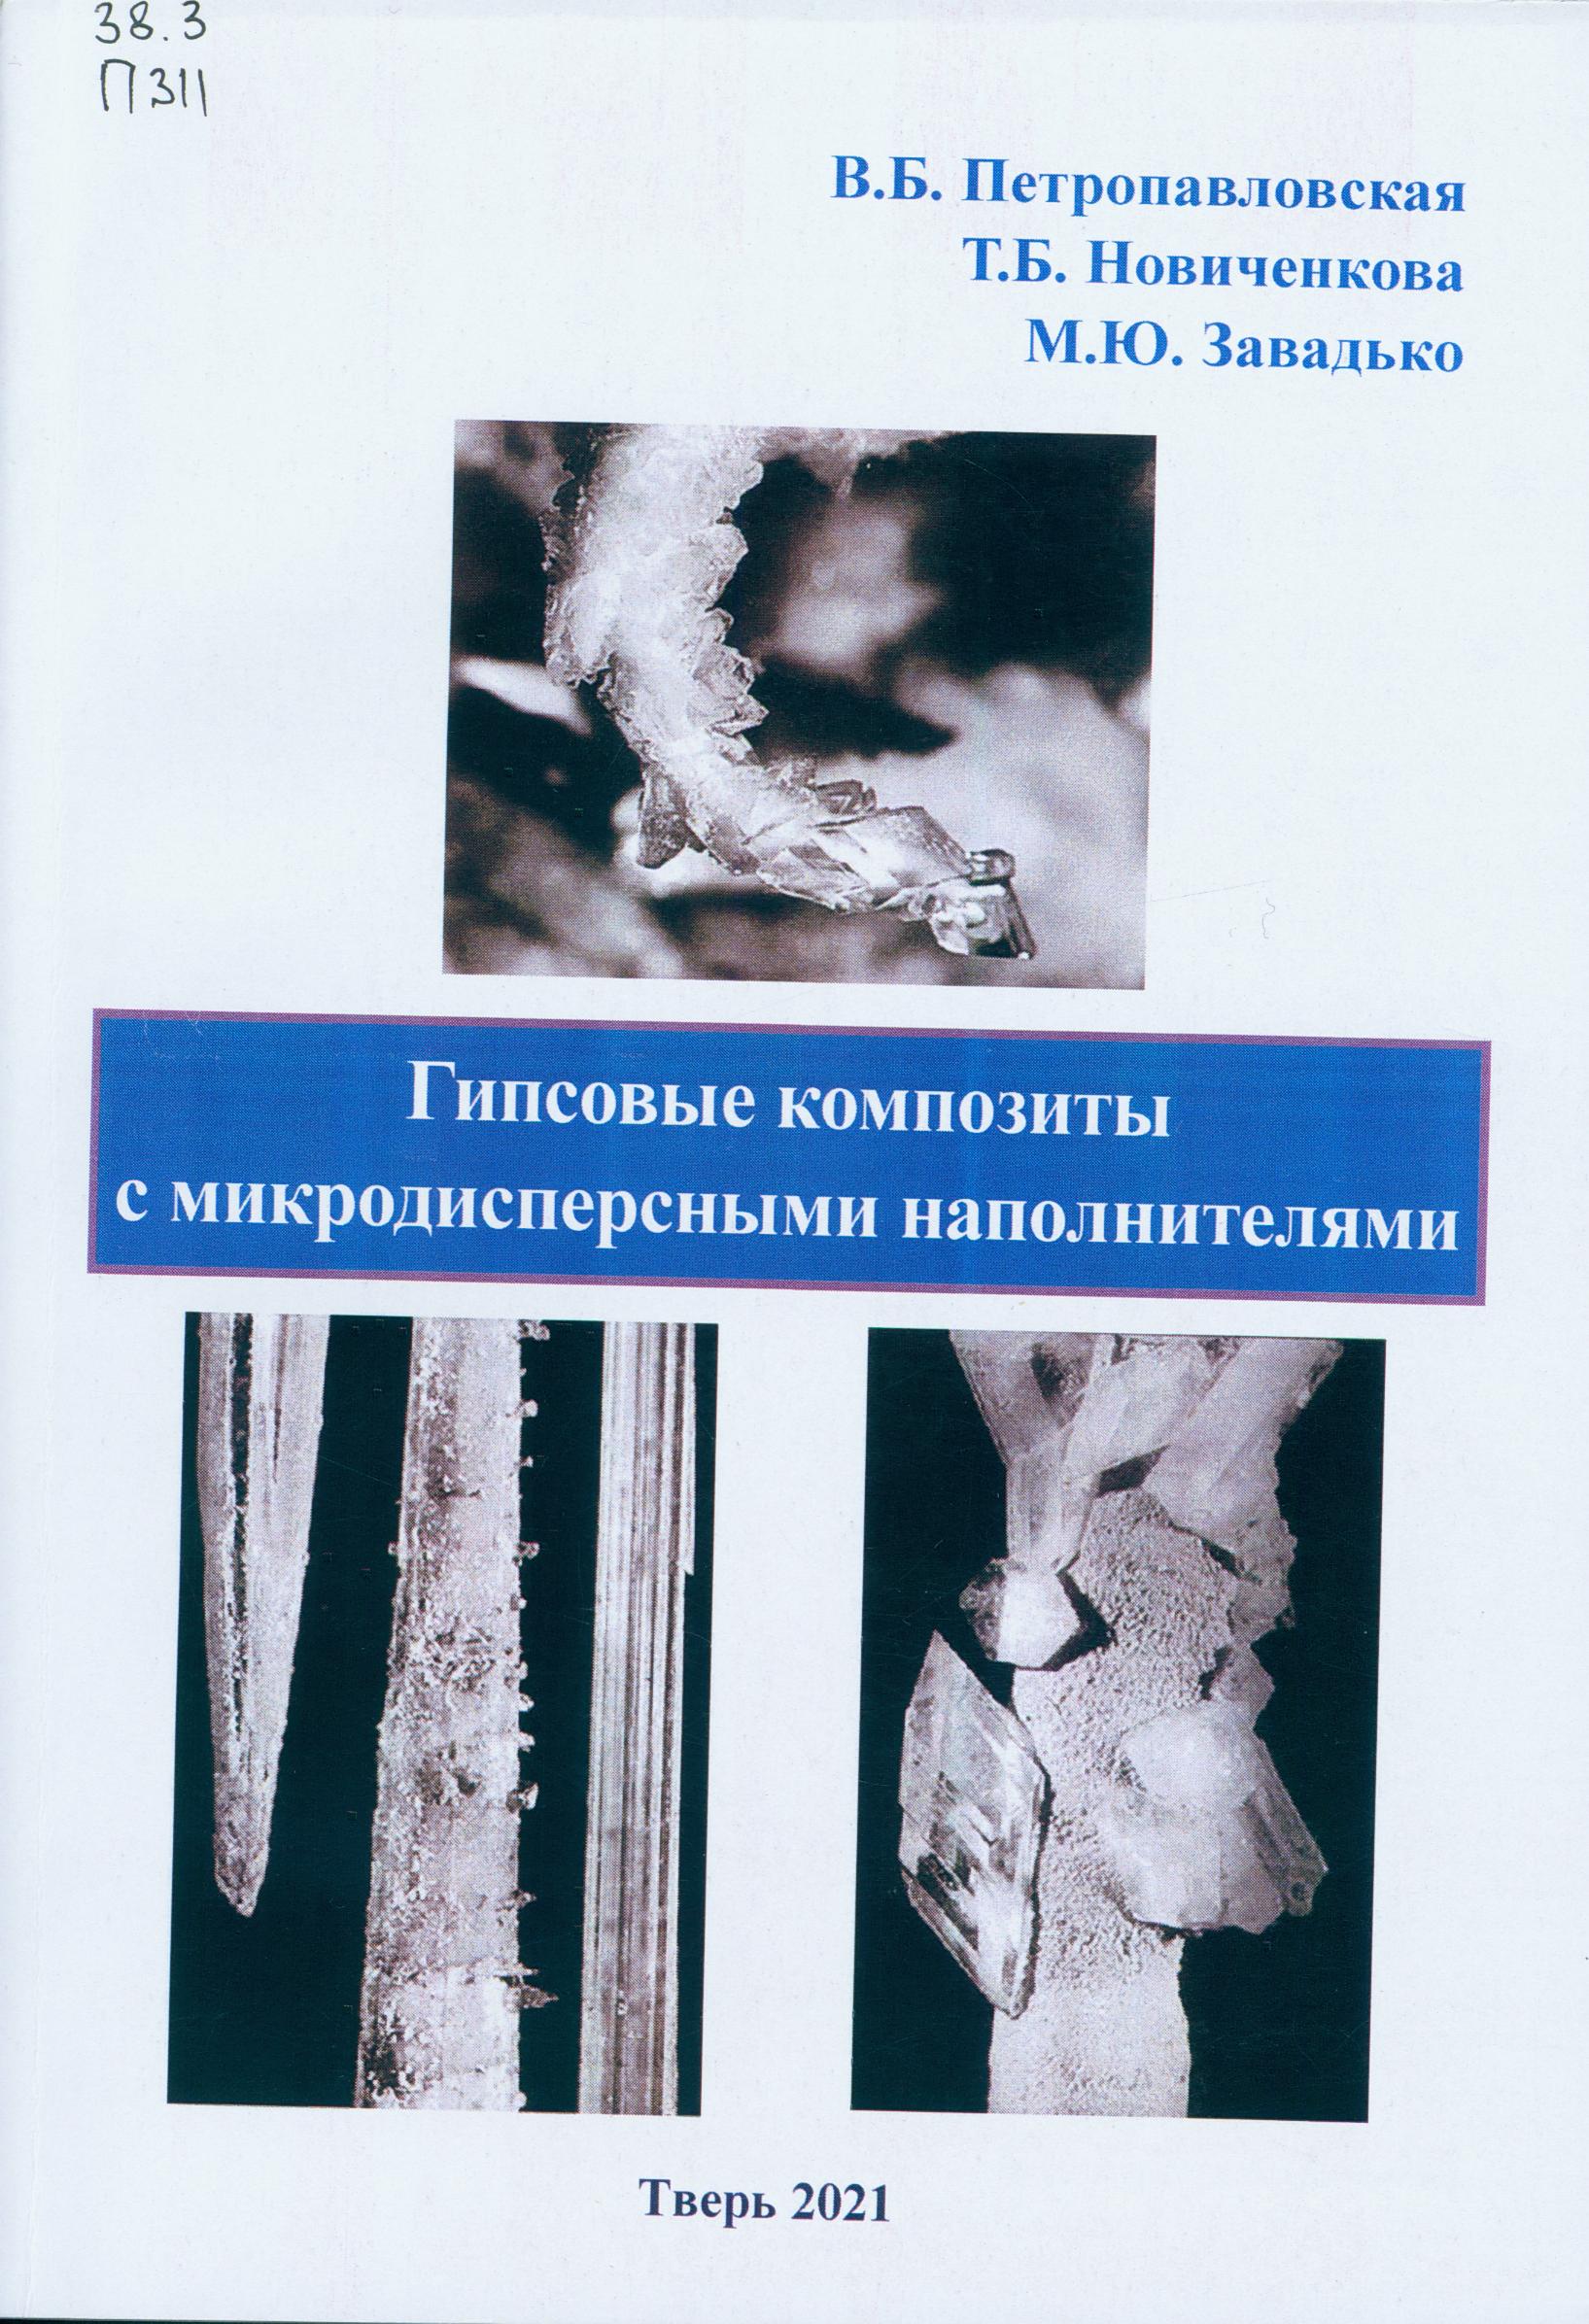 Петропавловская В. Б. Гипсовые композиты с микродисперсными наполнителями